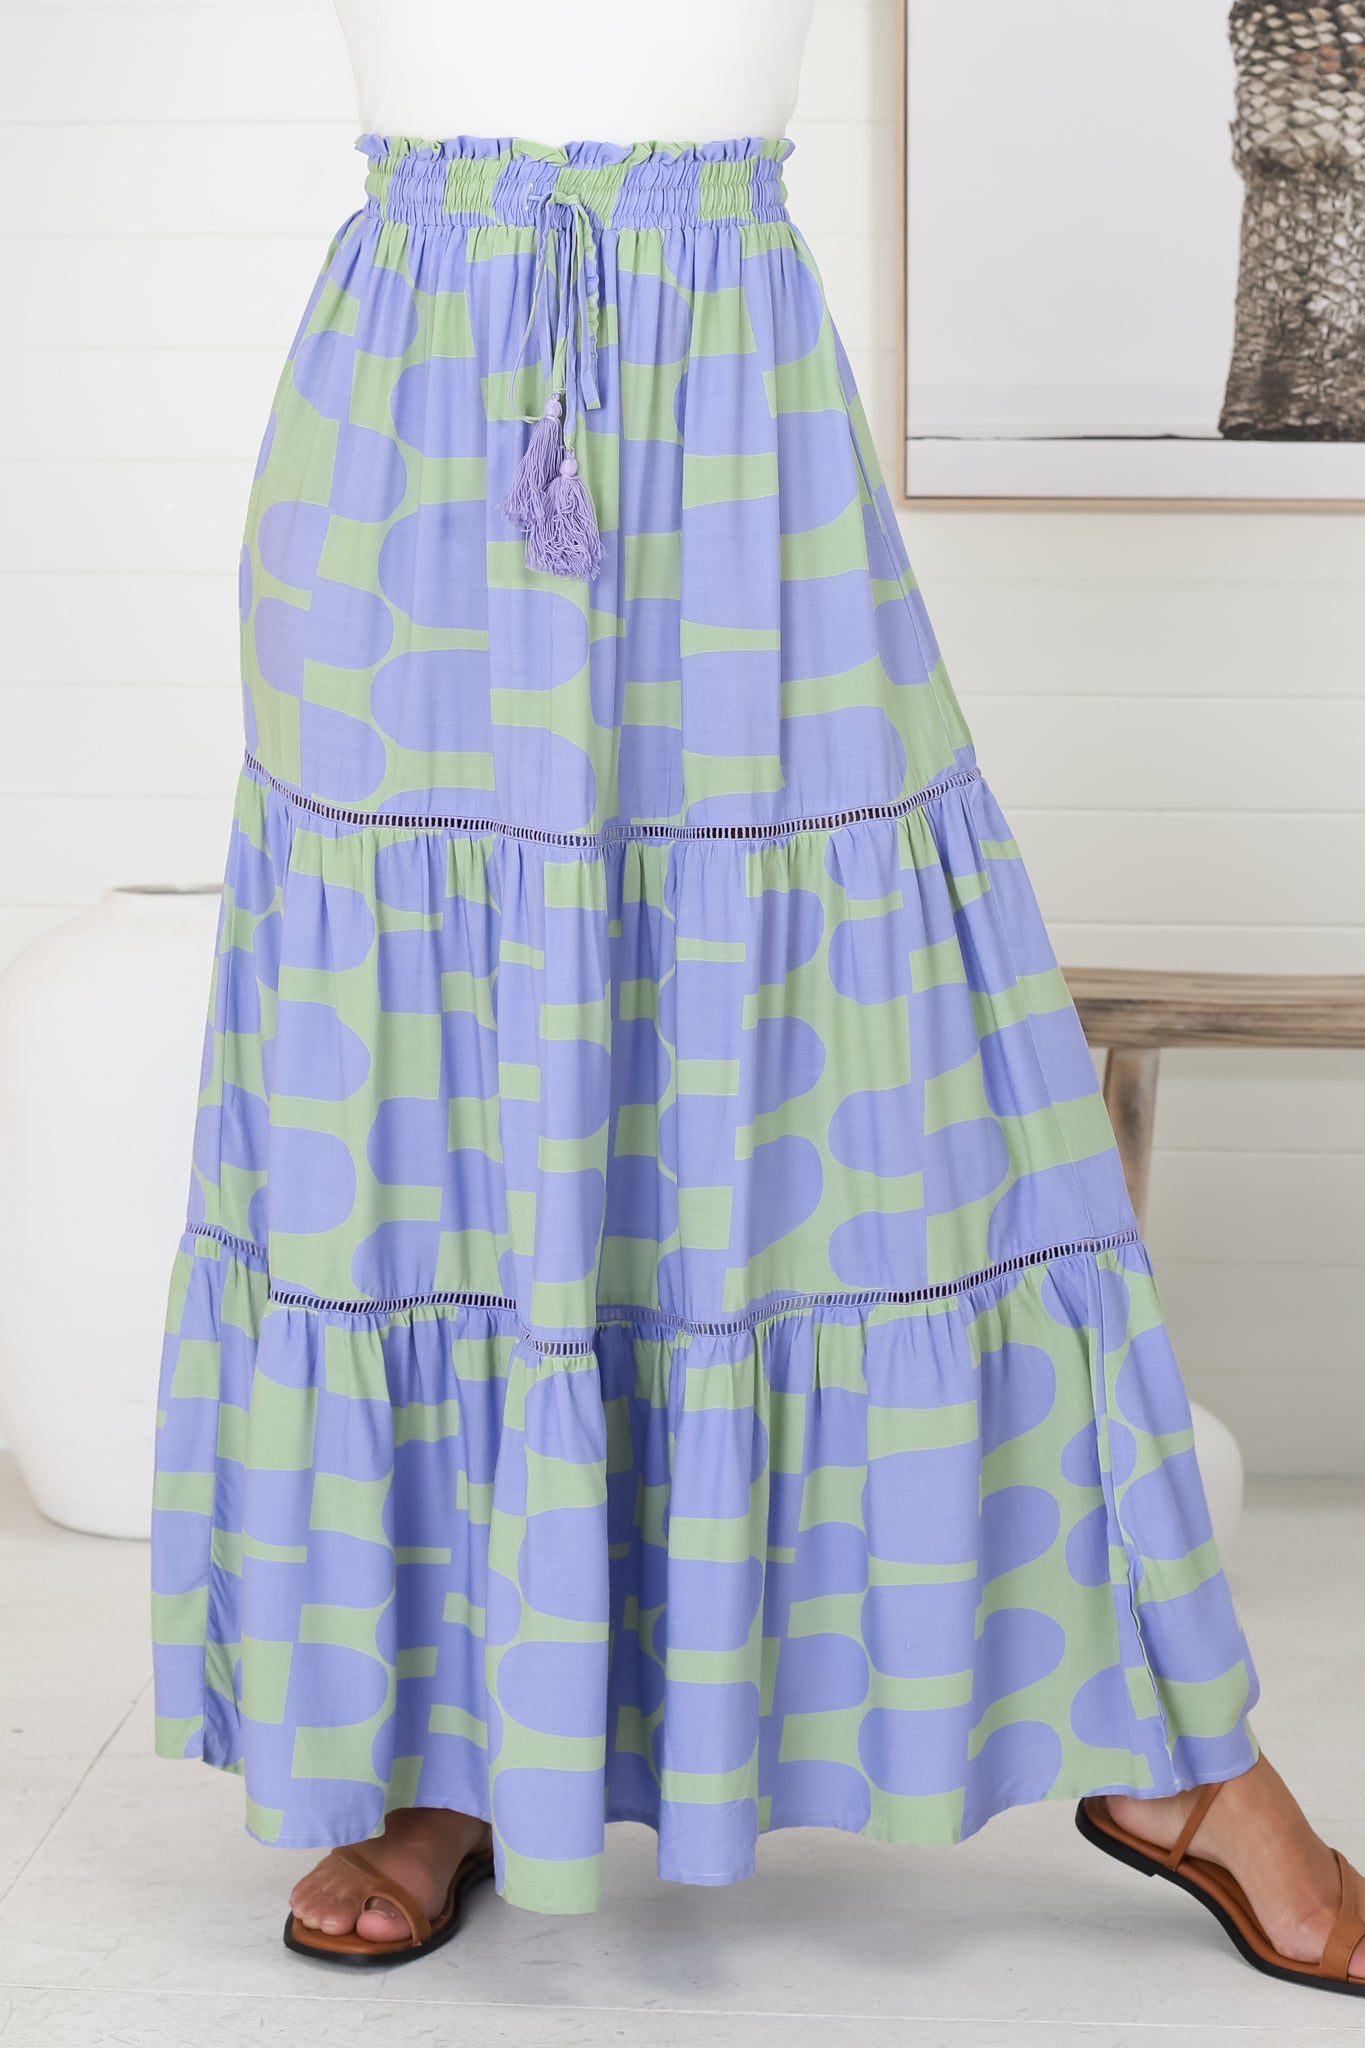 Korbella Maxi Skirt - Tiered Crochet Insert Skirt in Lime